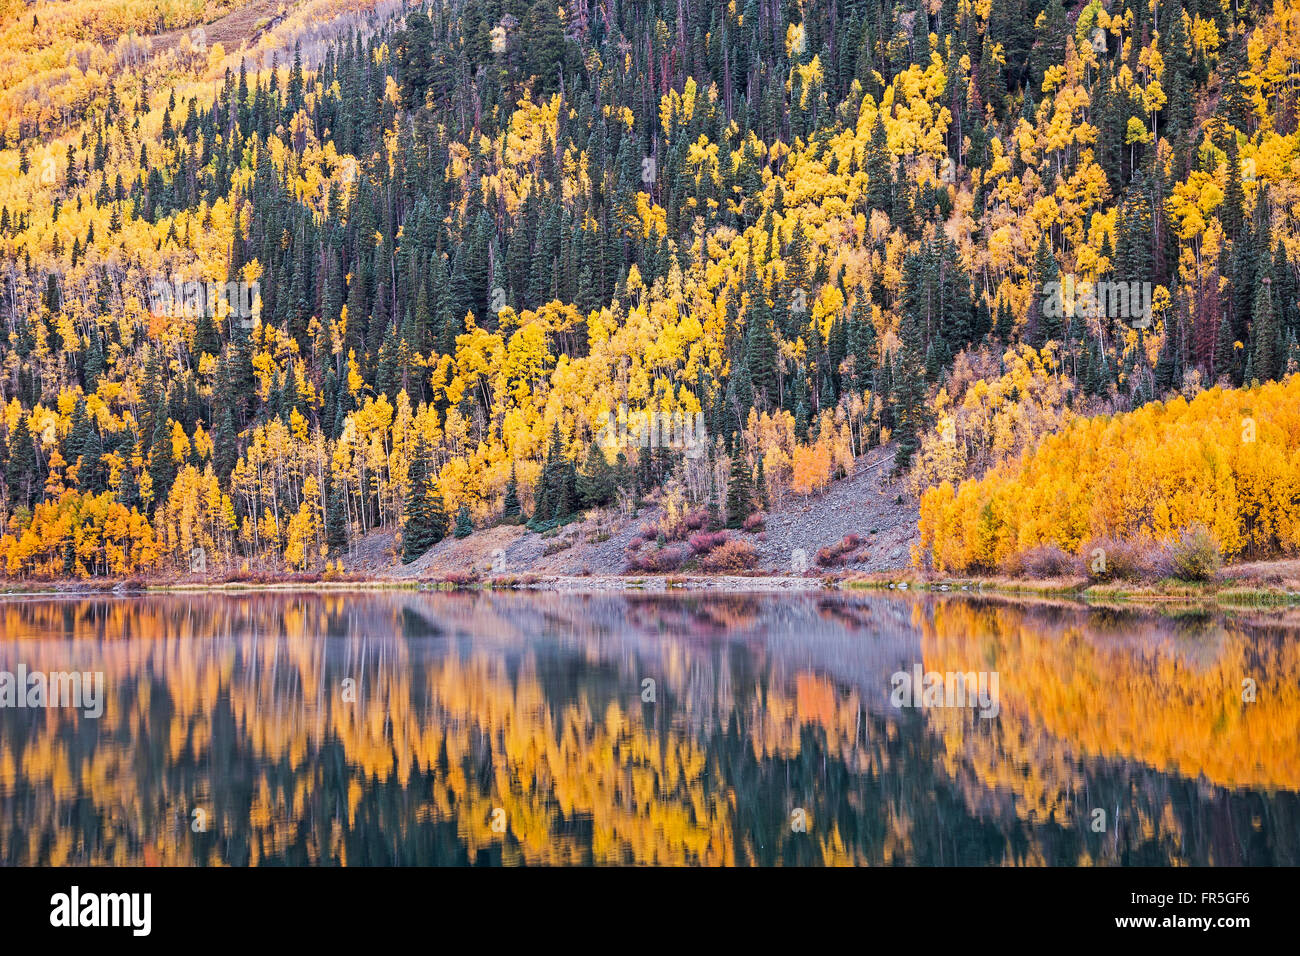 Reflejo de Amarillo otoño los árboles en la ladera en el tranquilo lago, Lago cristalino, Ouray, Colorado, Estados Unidos Foto de stock